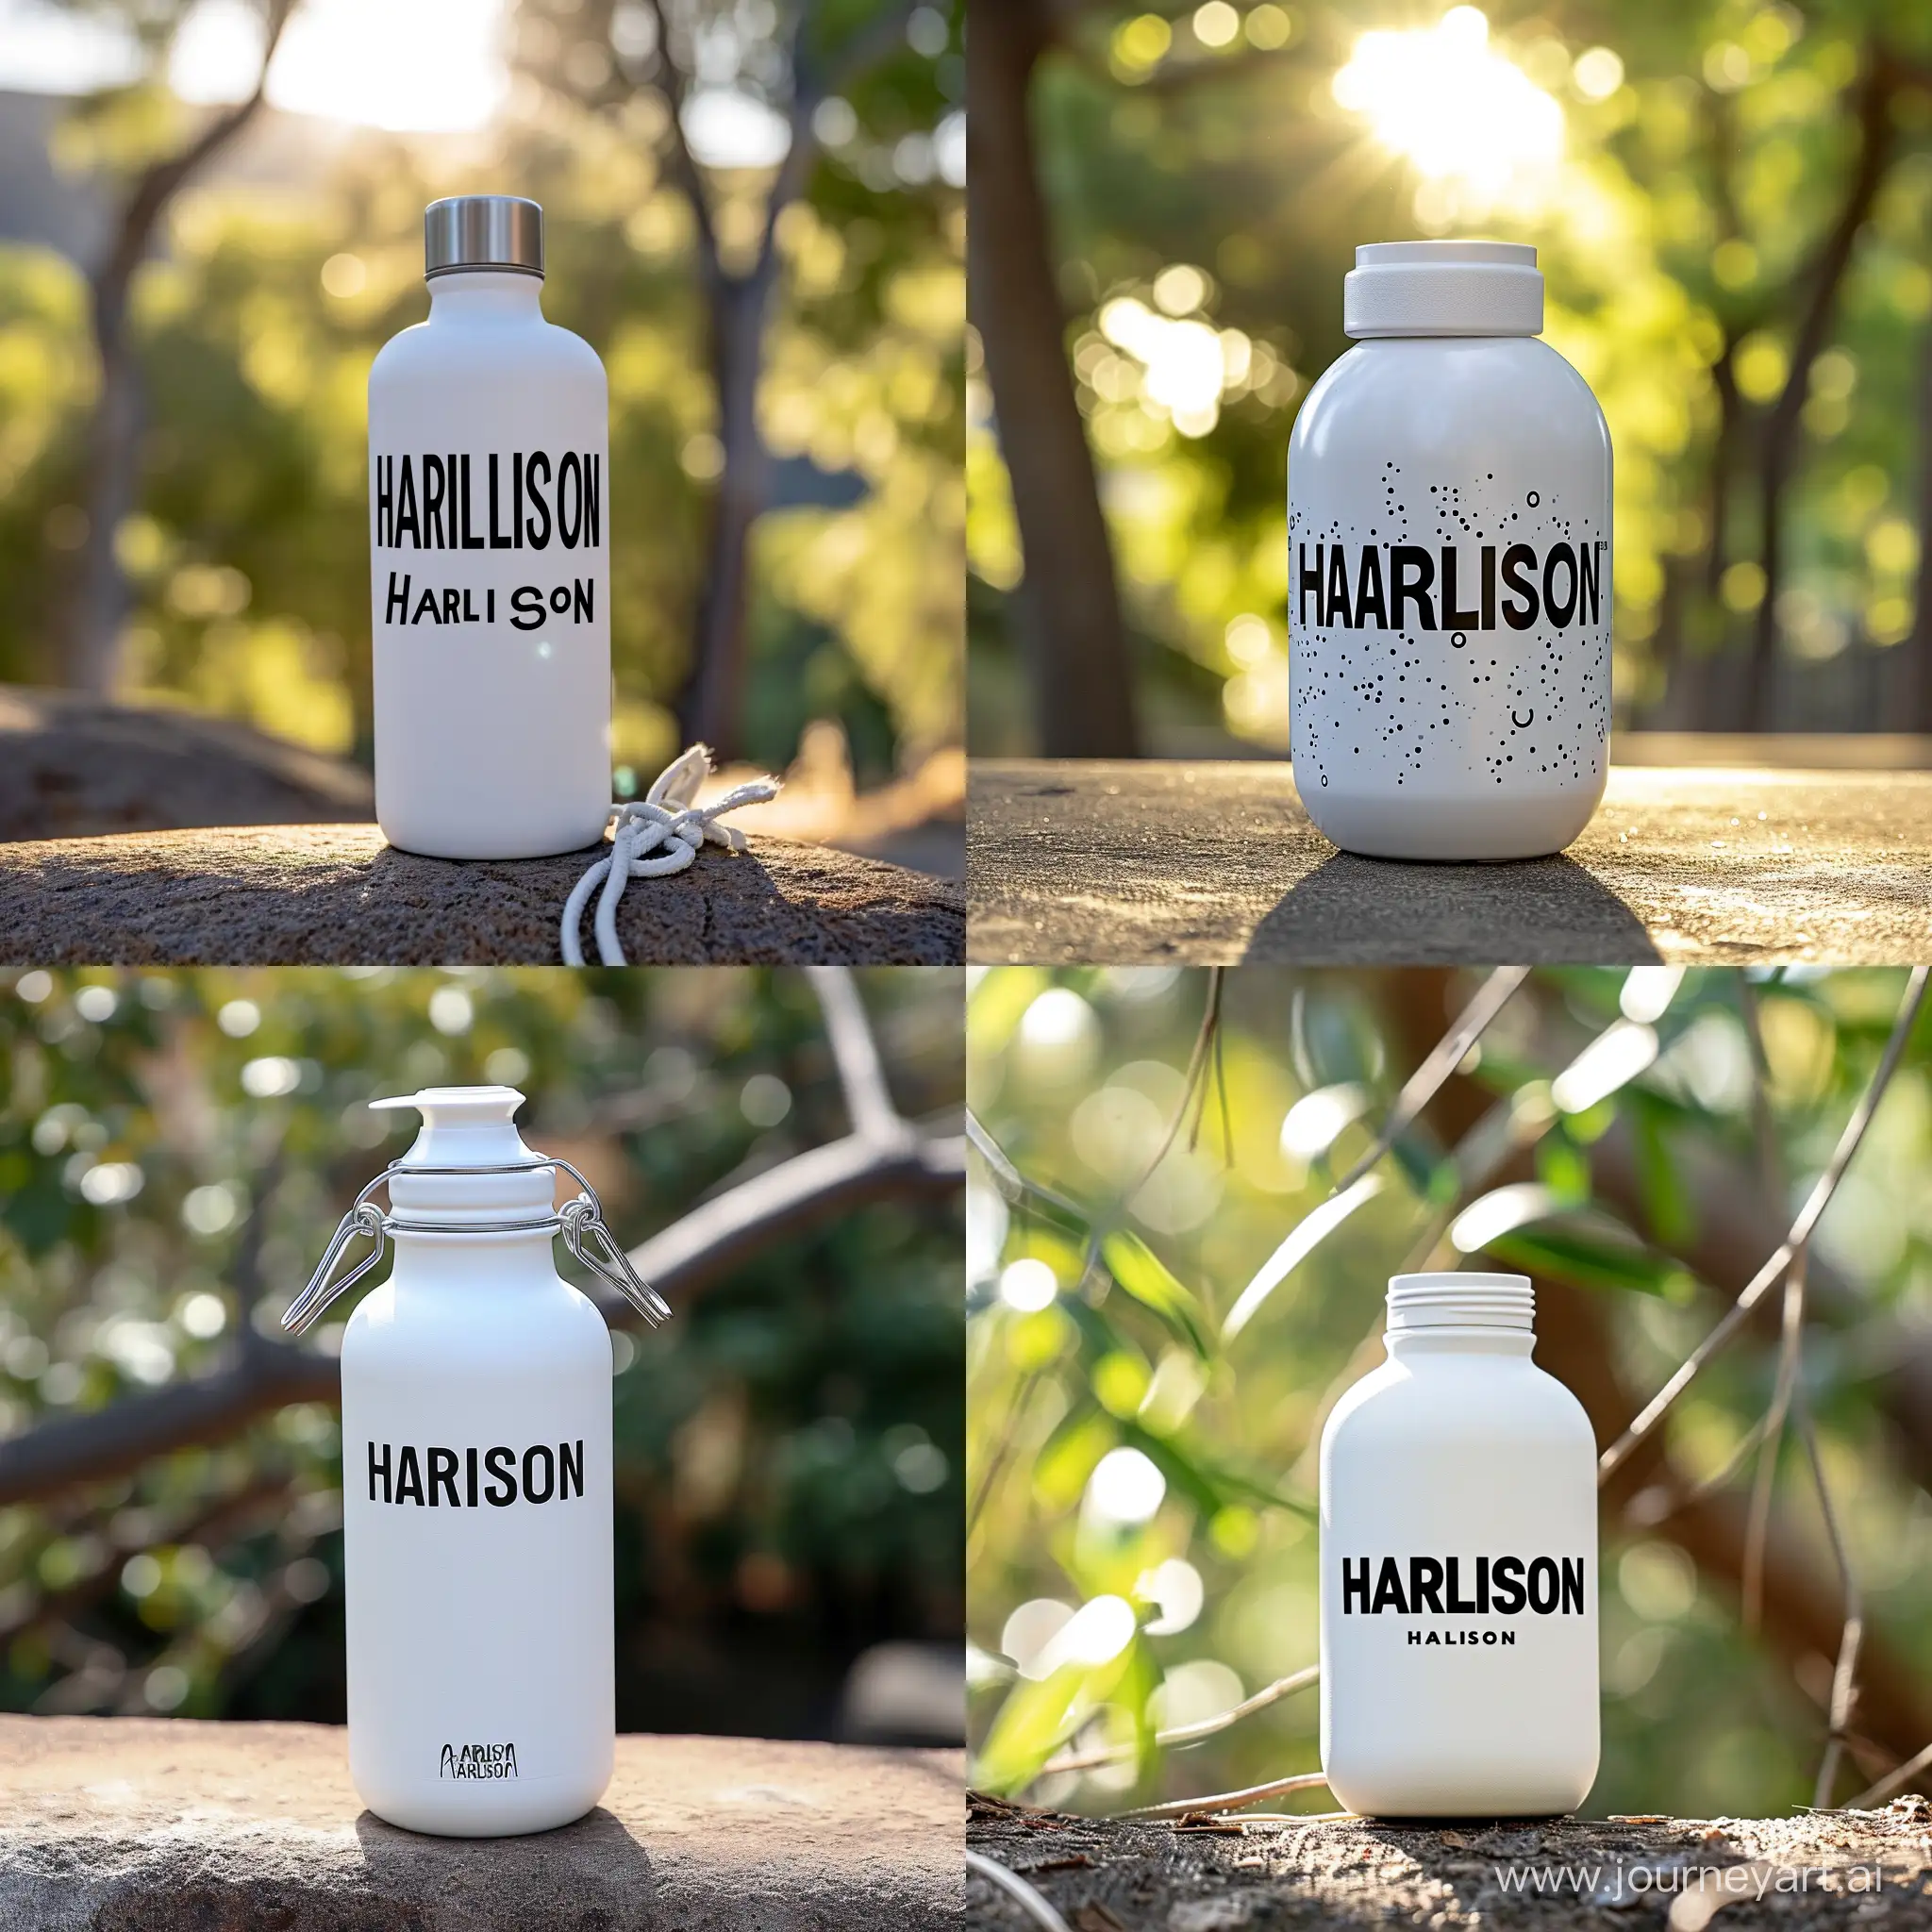 HARLISON-White-Gym-Bottle-in-Sunlight